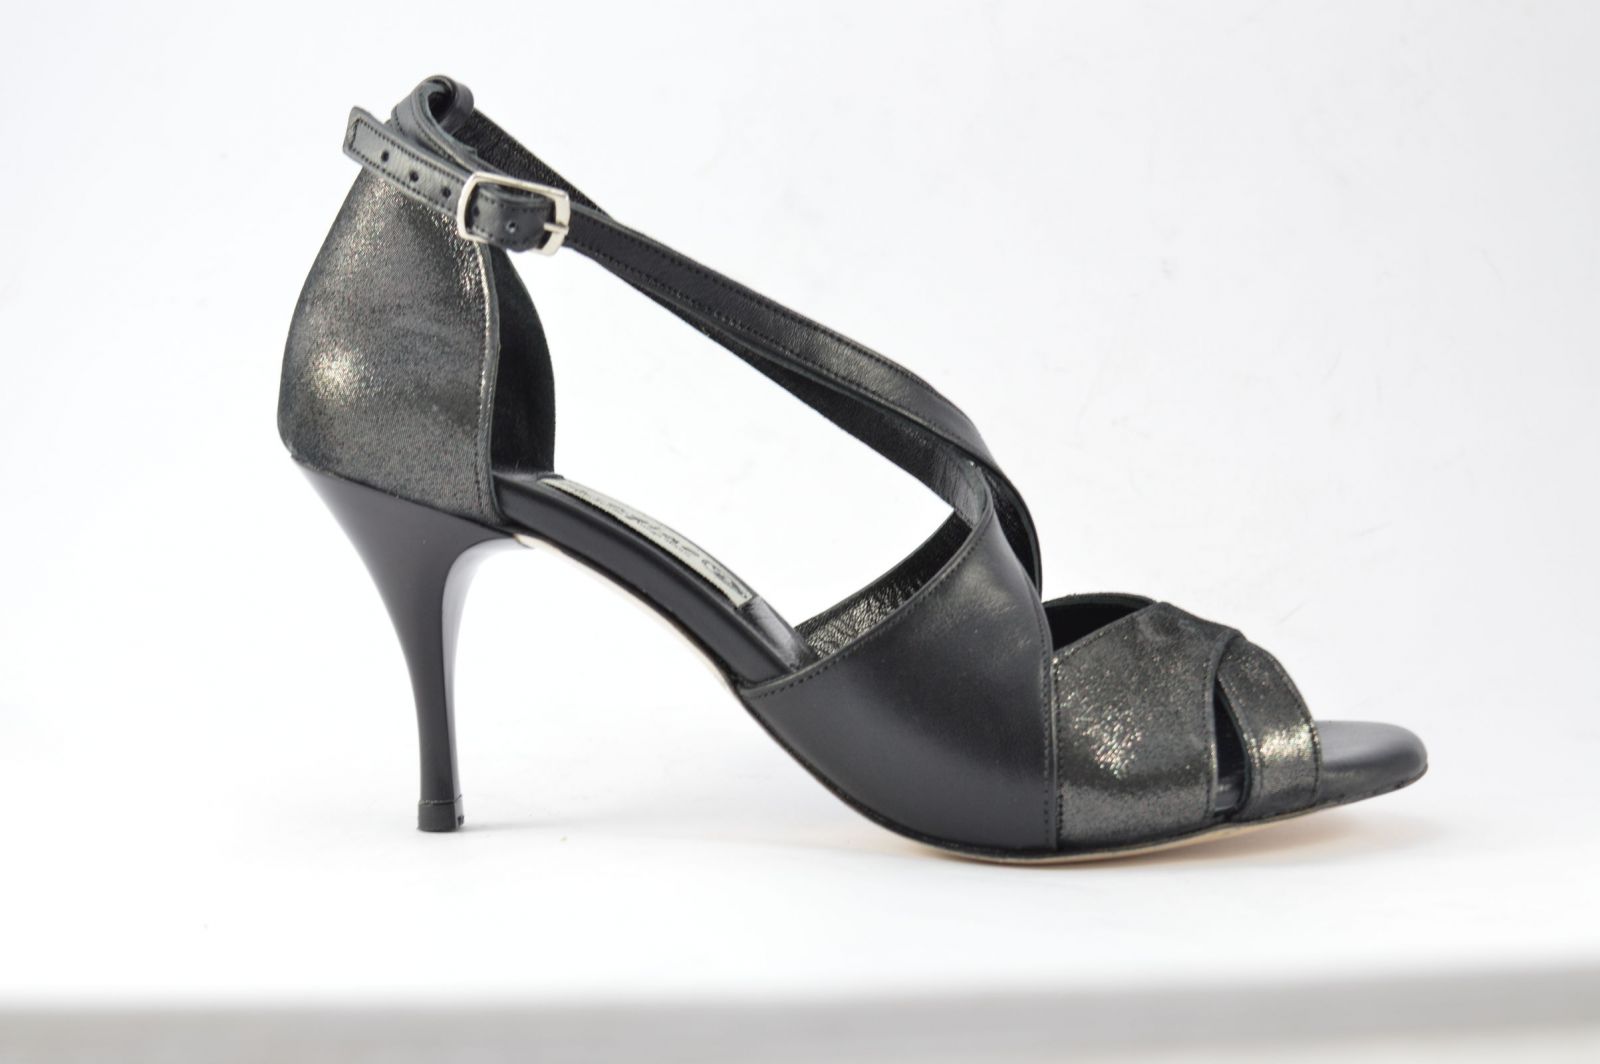 Γυναικείο παπούτσι tango, peep toe, από μαύρο δέρμα και μαύρο δέρμα πέρλα.